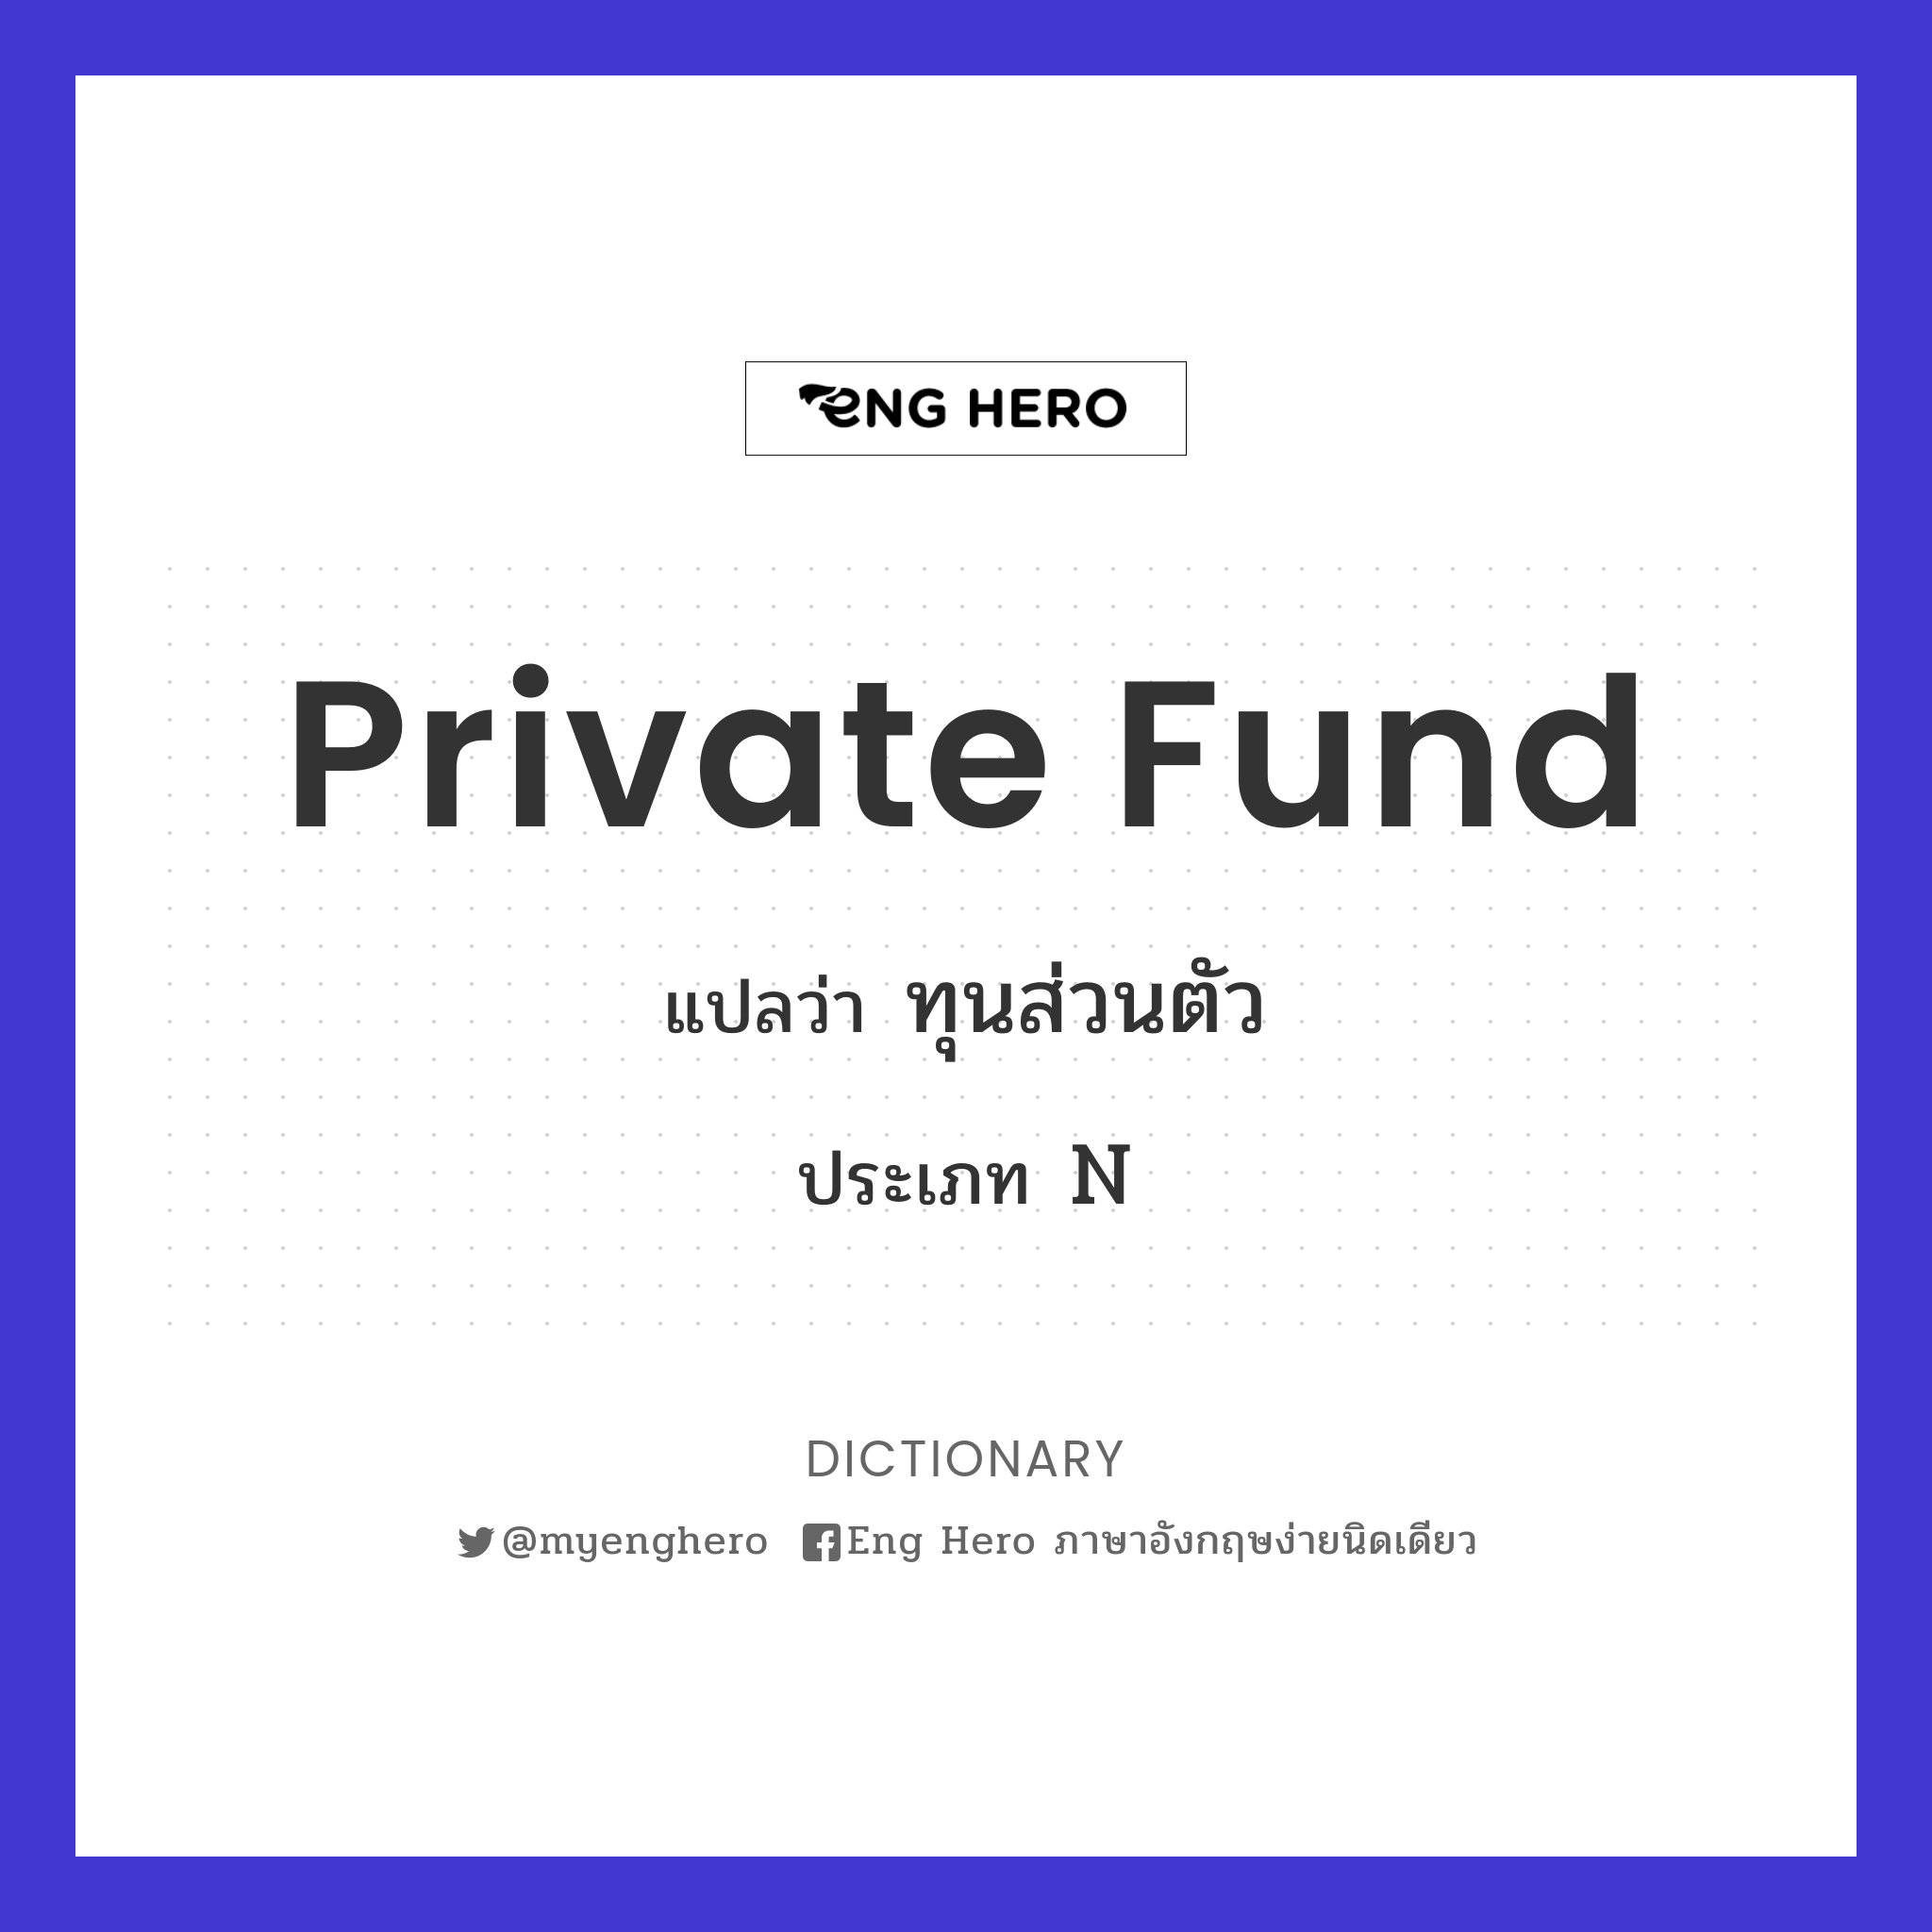 private fund